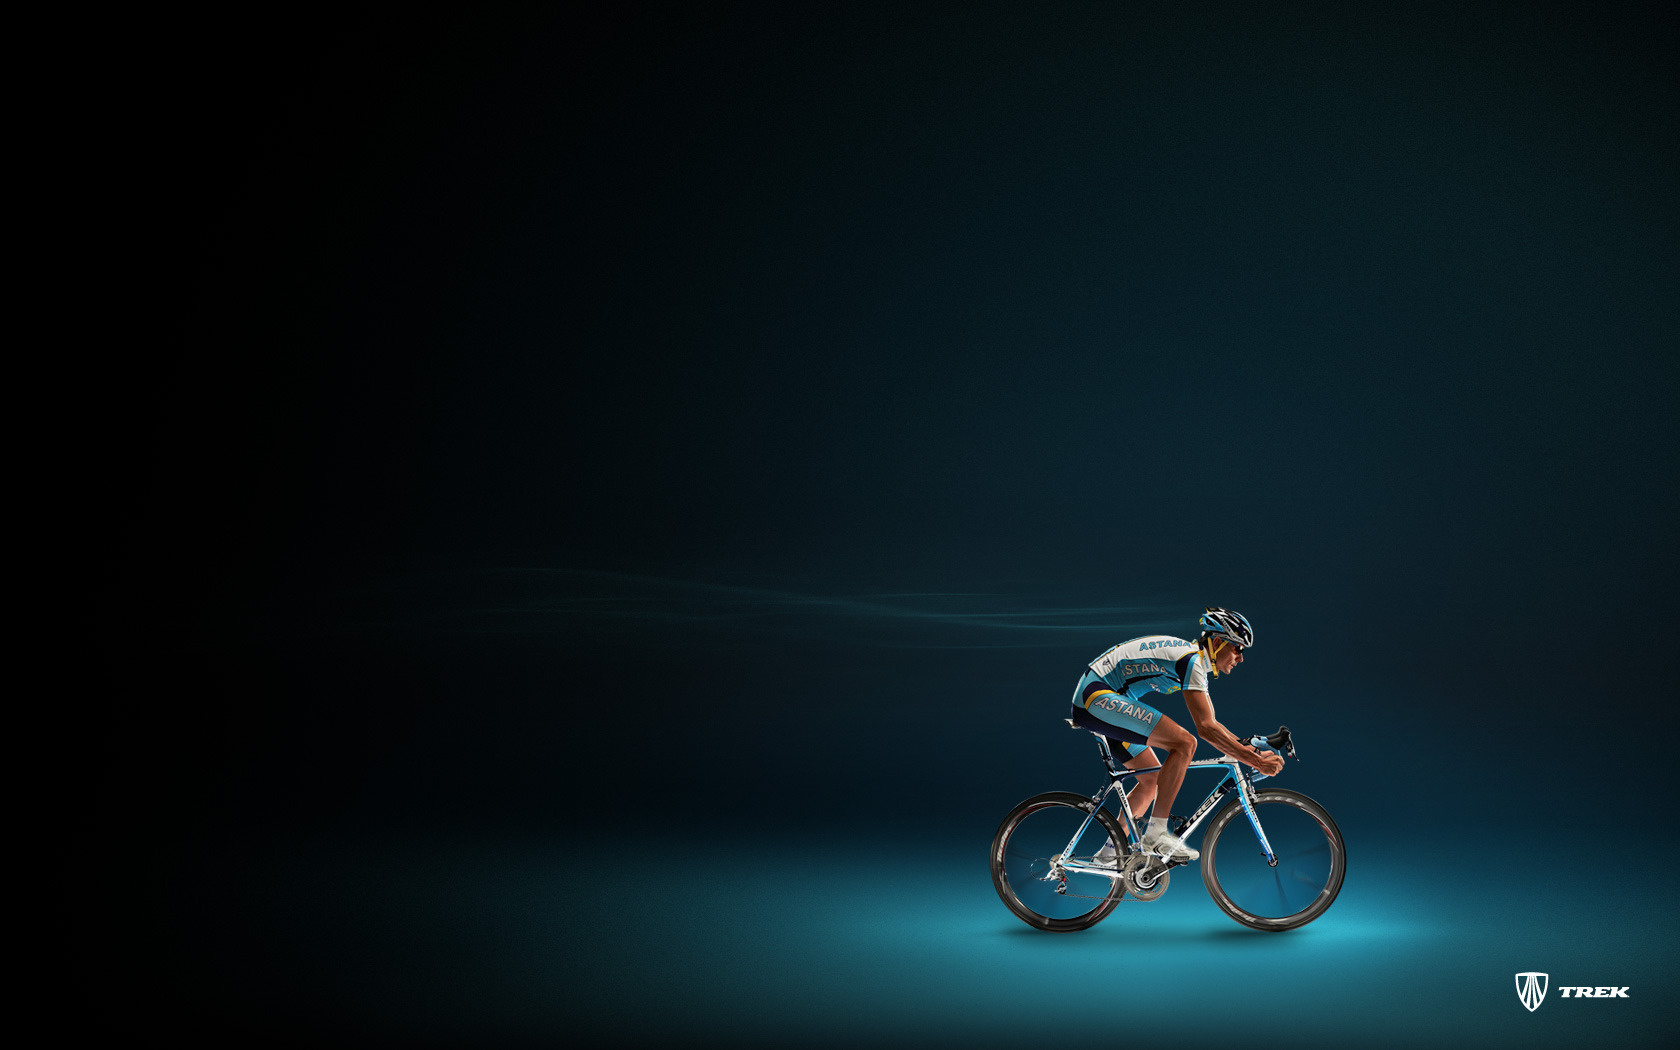 Wallpaper Astana Andreas Kloden Bike Cycling Desktop